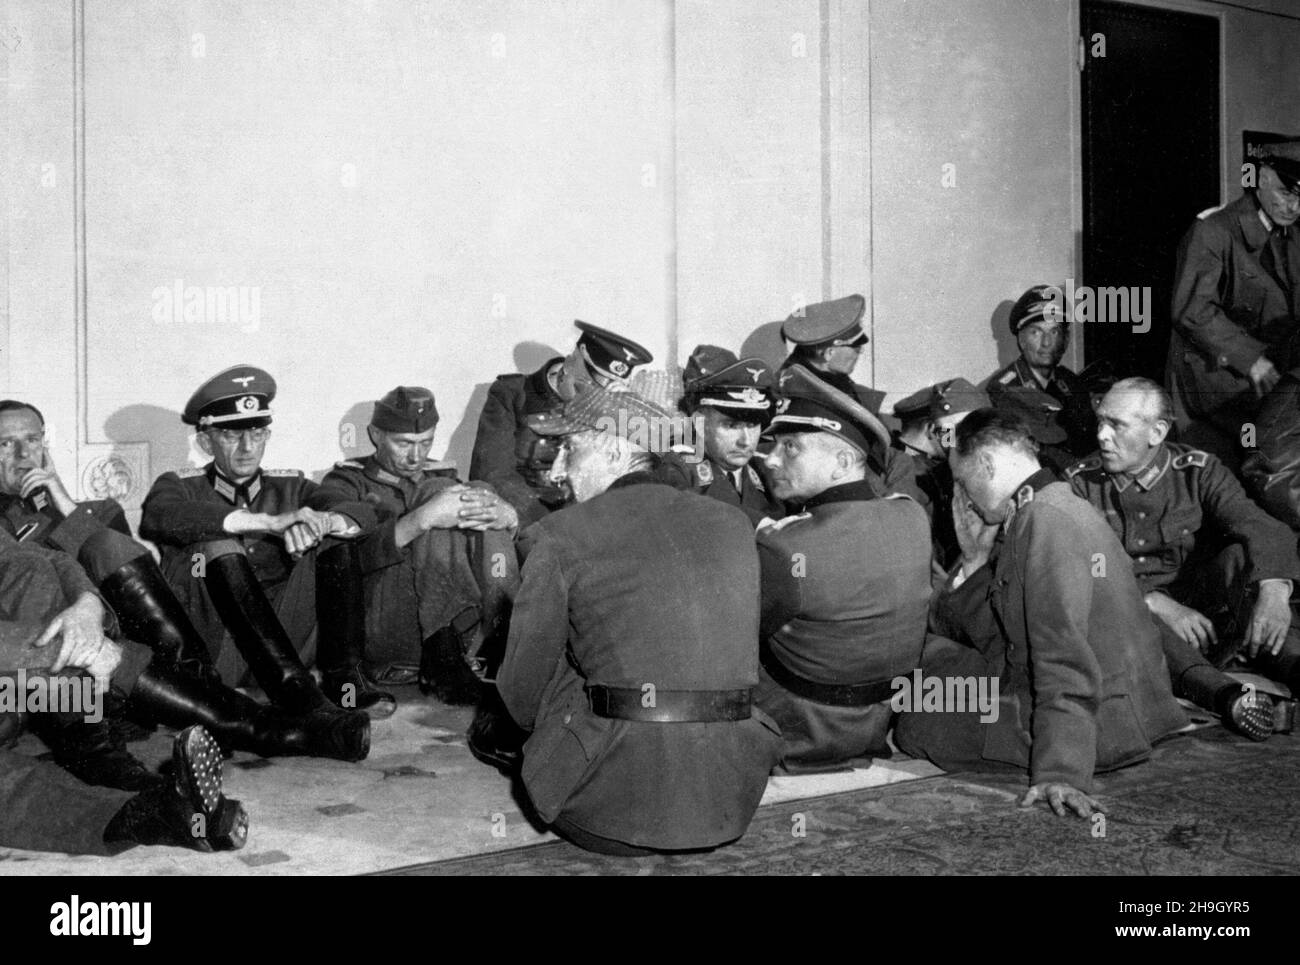 PARIS, FRANKREICH - 26. August 1944 - hochrangige deutsche Offiziere, die von französischen Truppen beschlagnahmt wurden und die Hauptstadt ihres Landes befreiten, werden in der H untergebracht Stockfoto